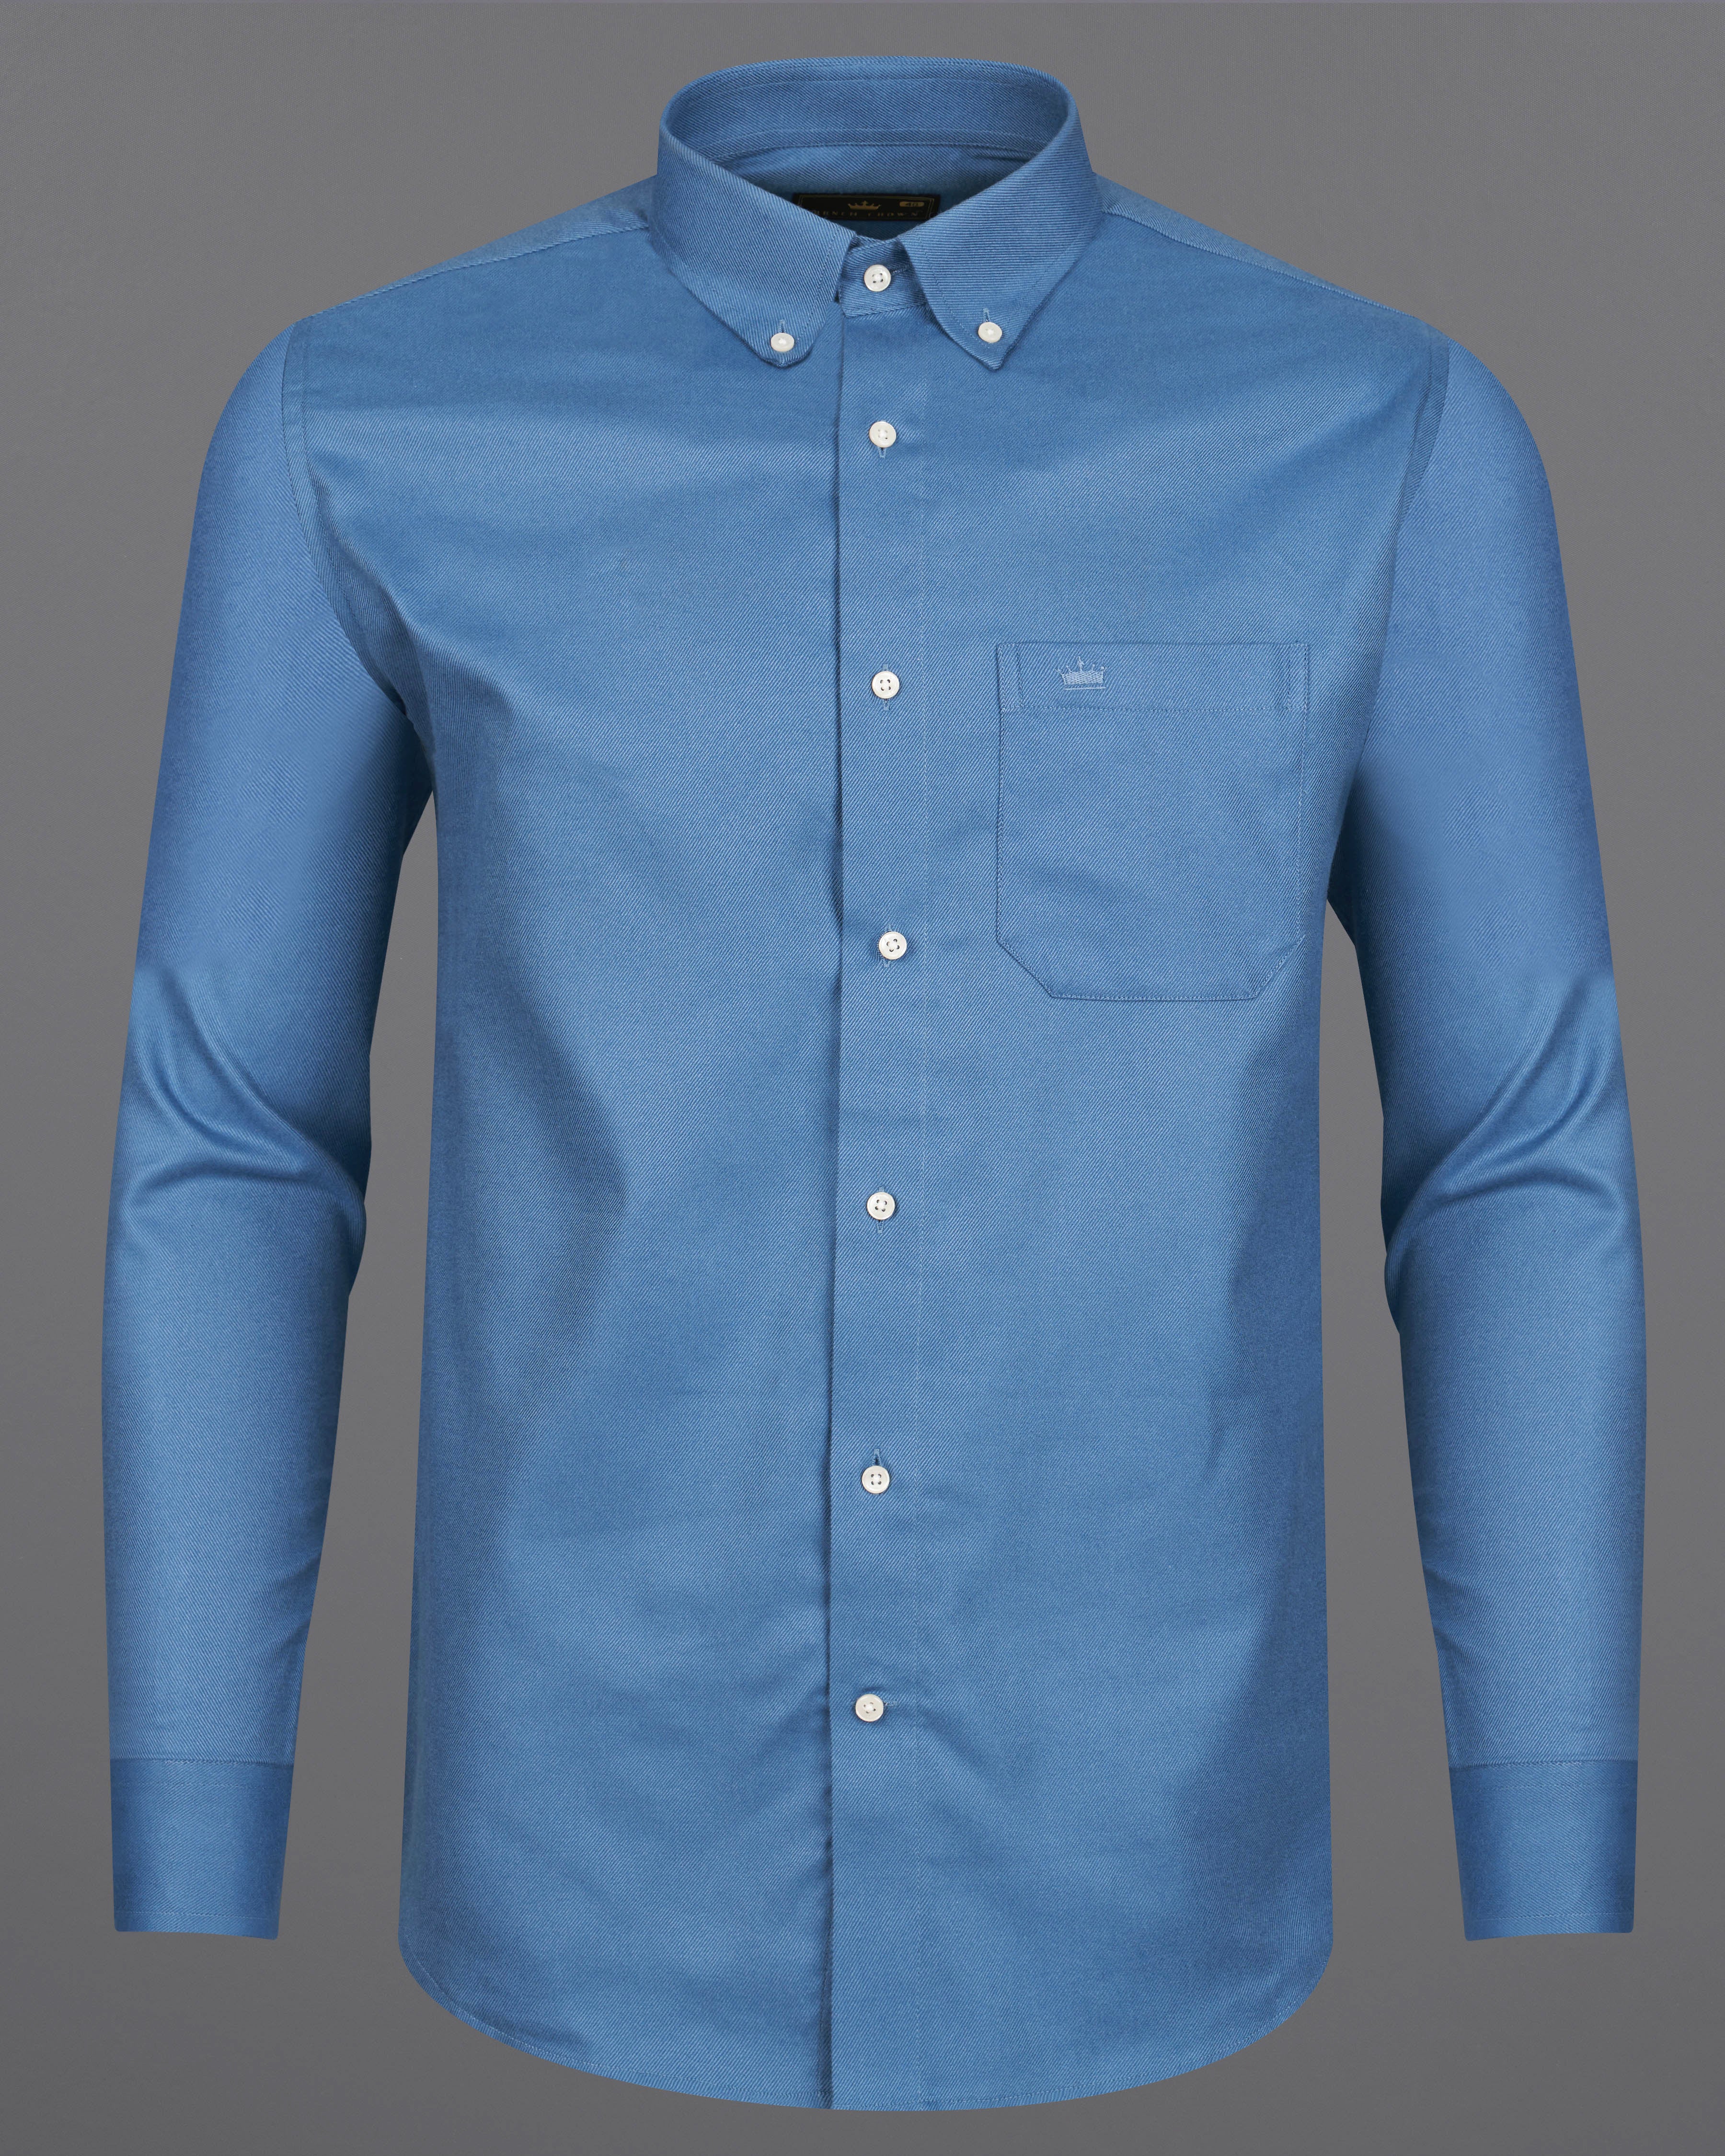 Waikawa Blue Twill Premium Cotton Shirt